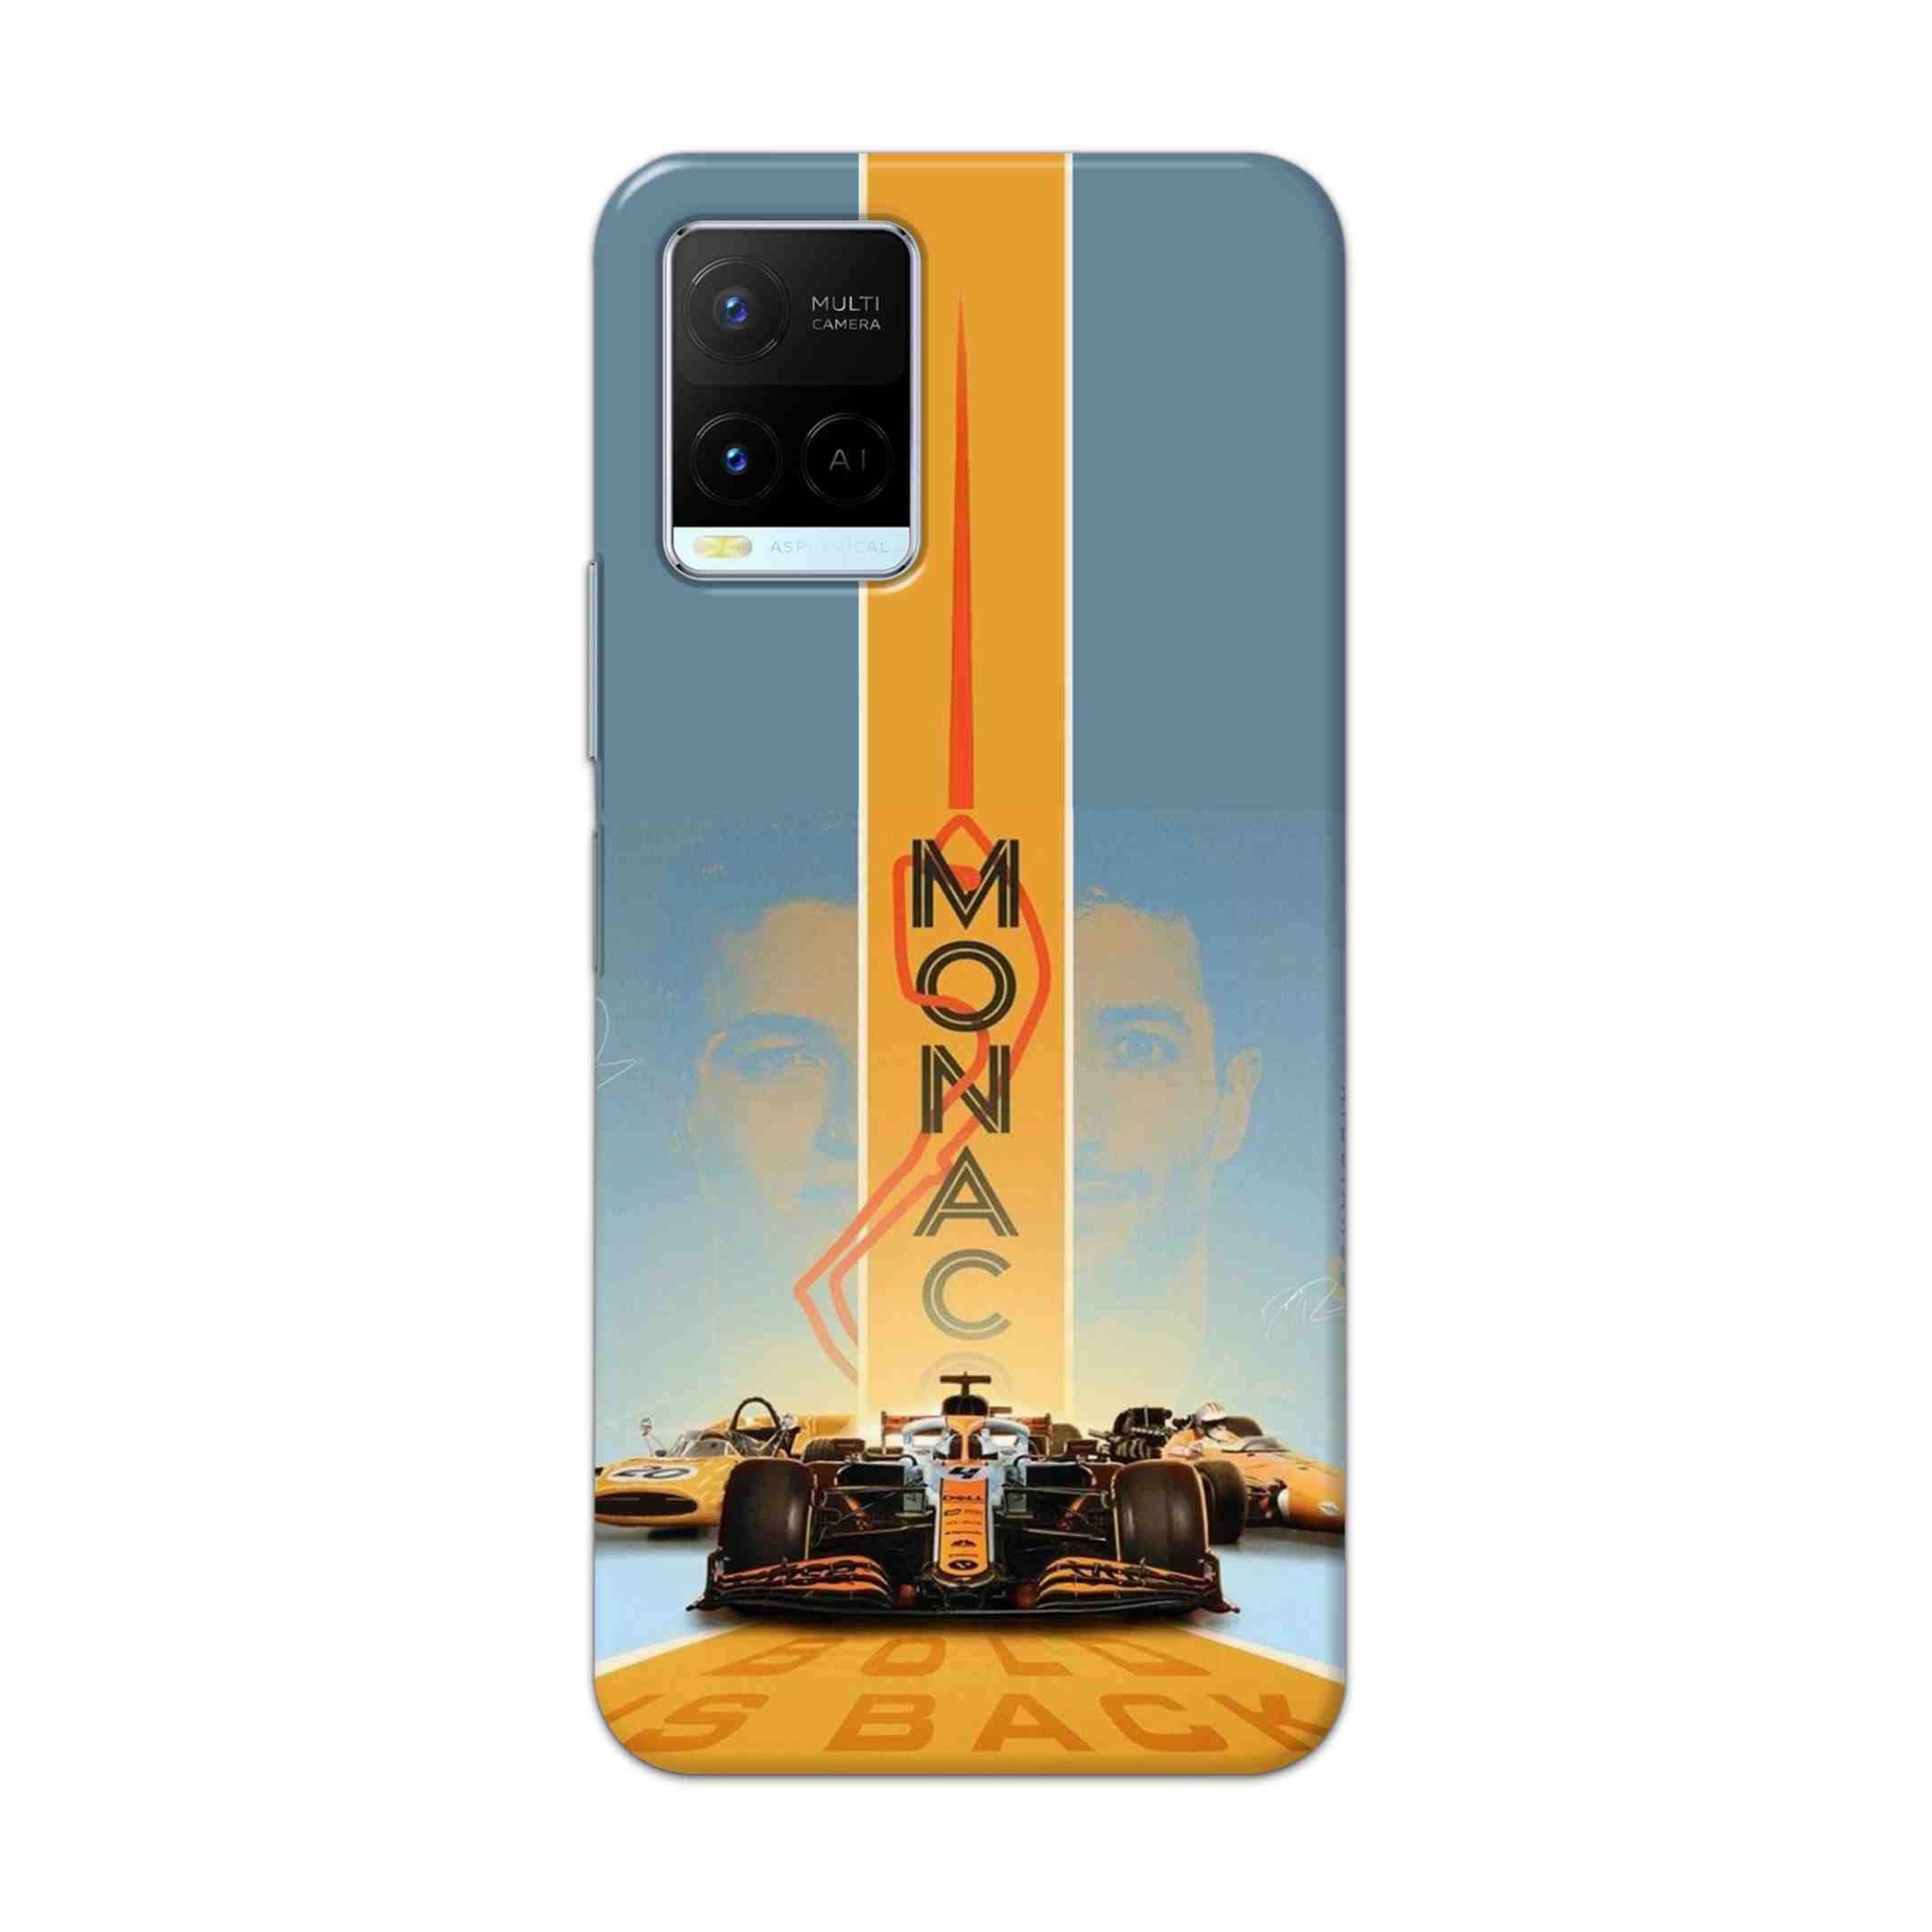 Buy Monac Formula Hard Back Mobile Phone Case Cover For Vivo Y21 2021 Online